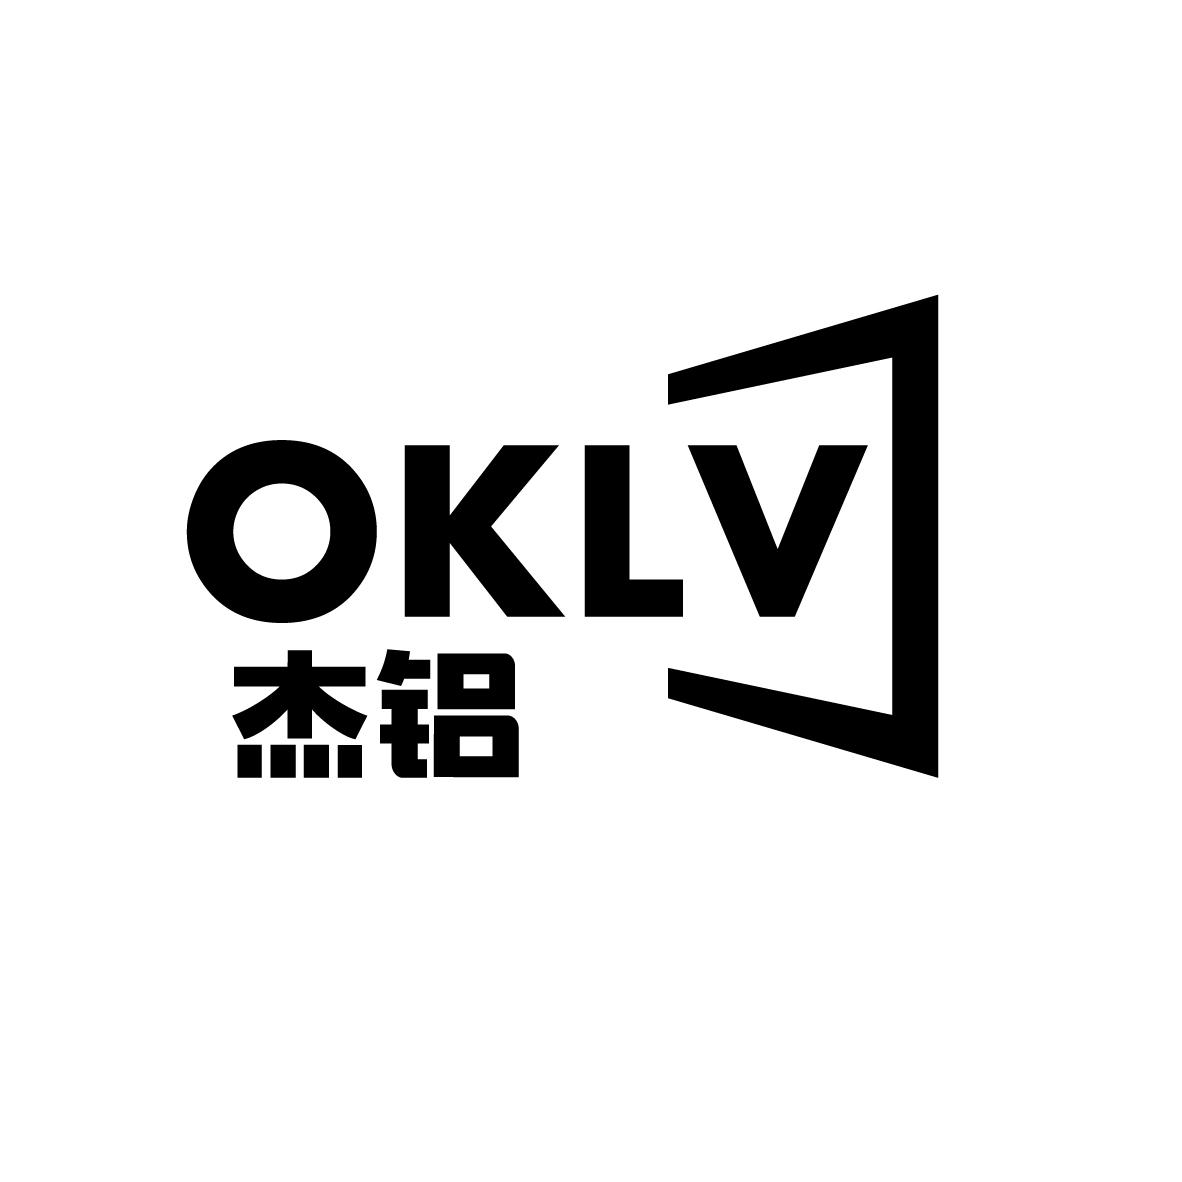  OKLV